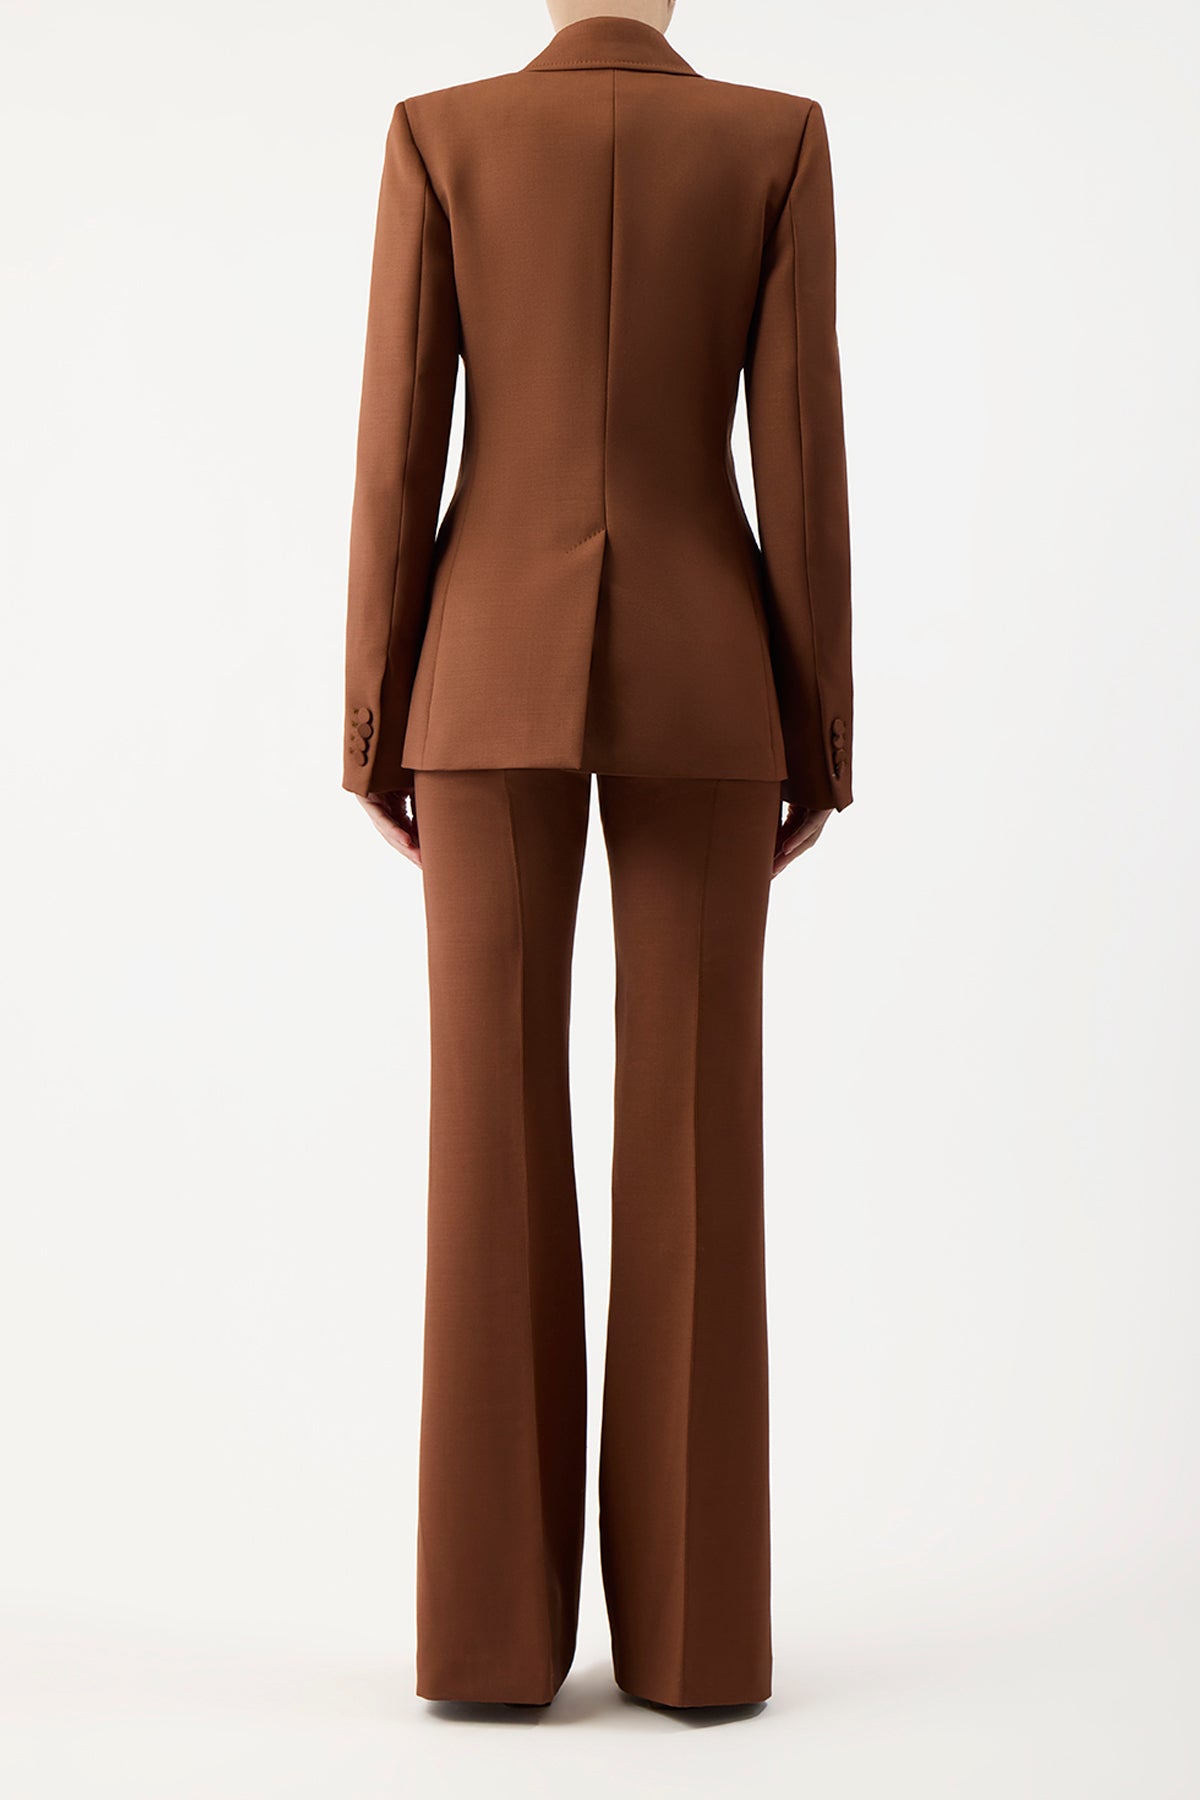 Leiva Blazer in Cognac Sportswear Wool